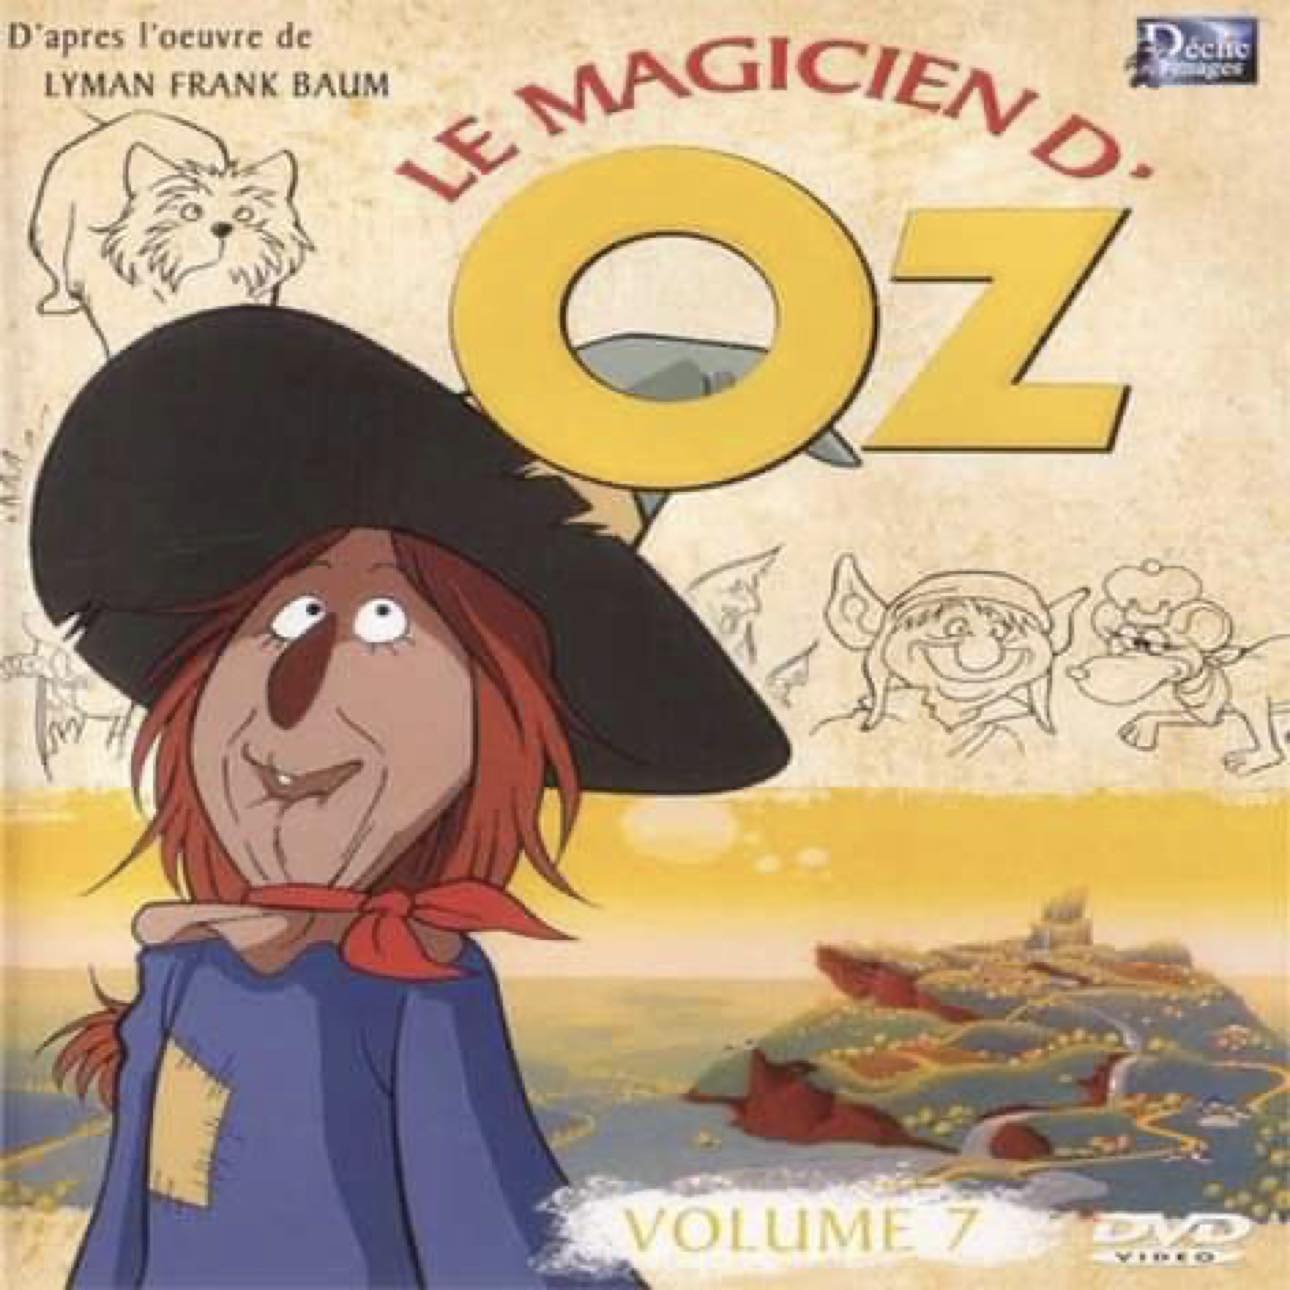 DVD - Le Magicien d'oz 7